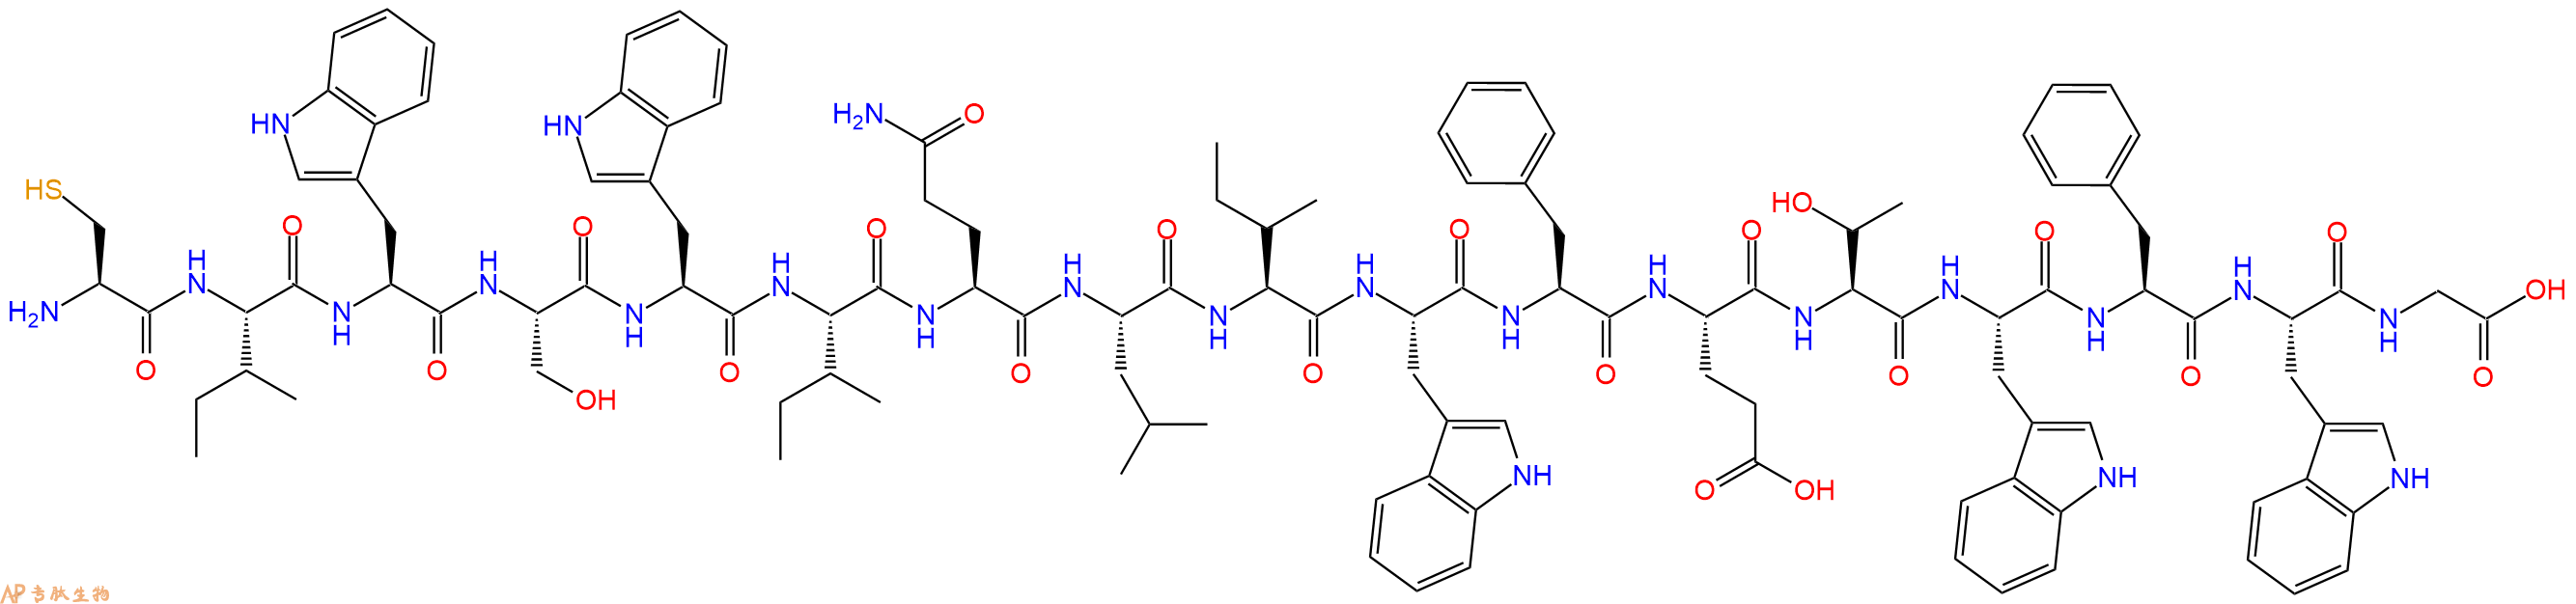 专肽生物产品H2N-Cys-Ile-Trp-Ser-Trp-Ile-Gln-Leu-Ile-Trp-Phe-Glu-Thr-Trp-Phe-Trp-Gly-COOH